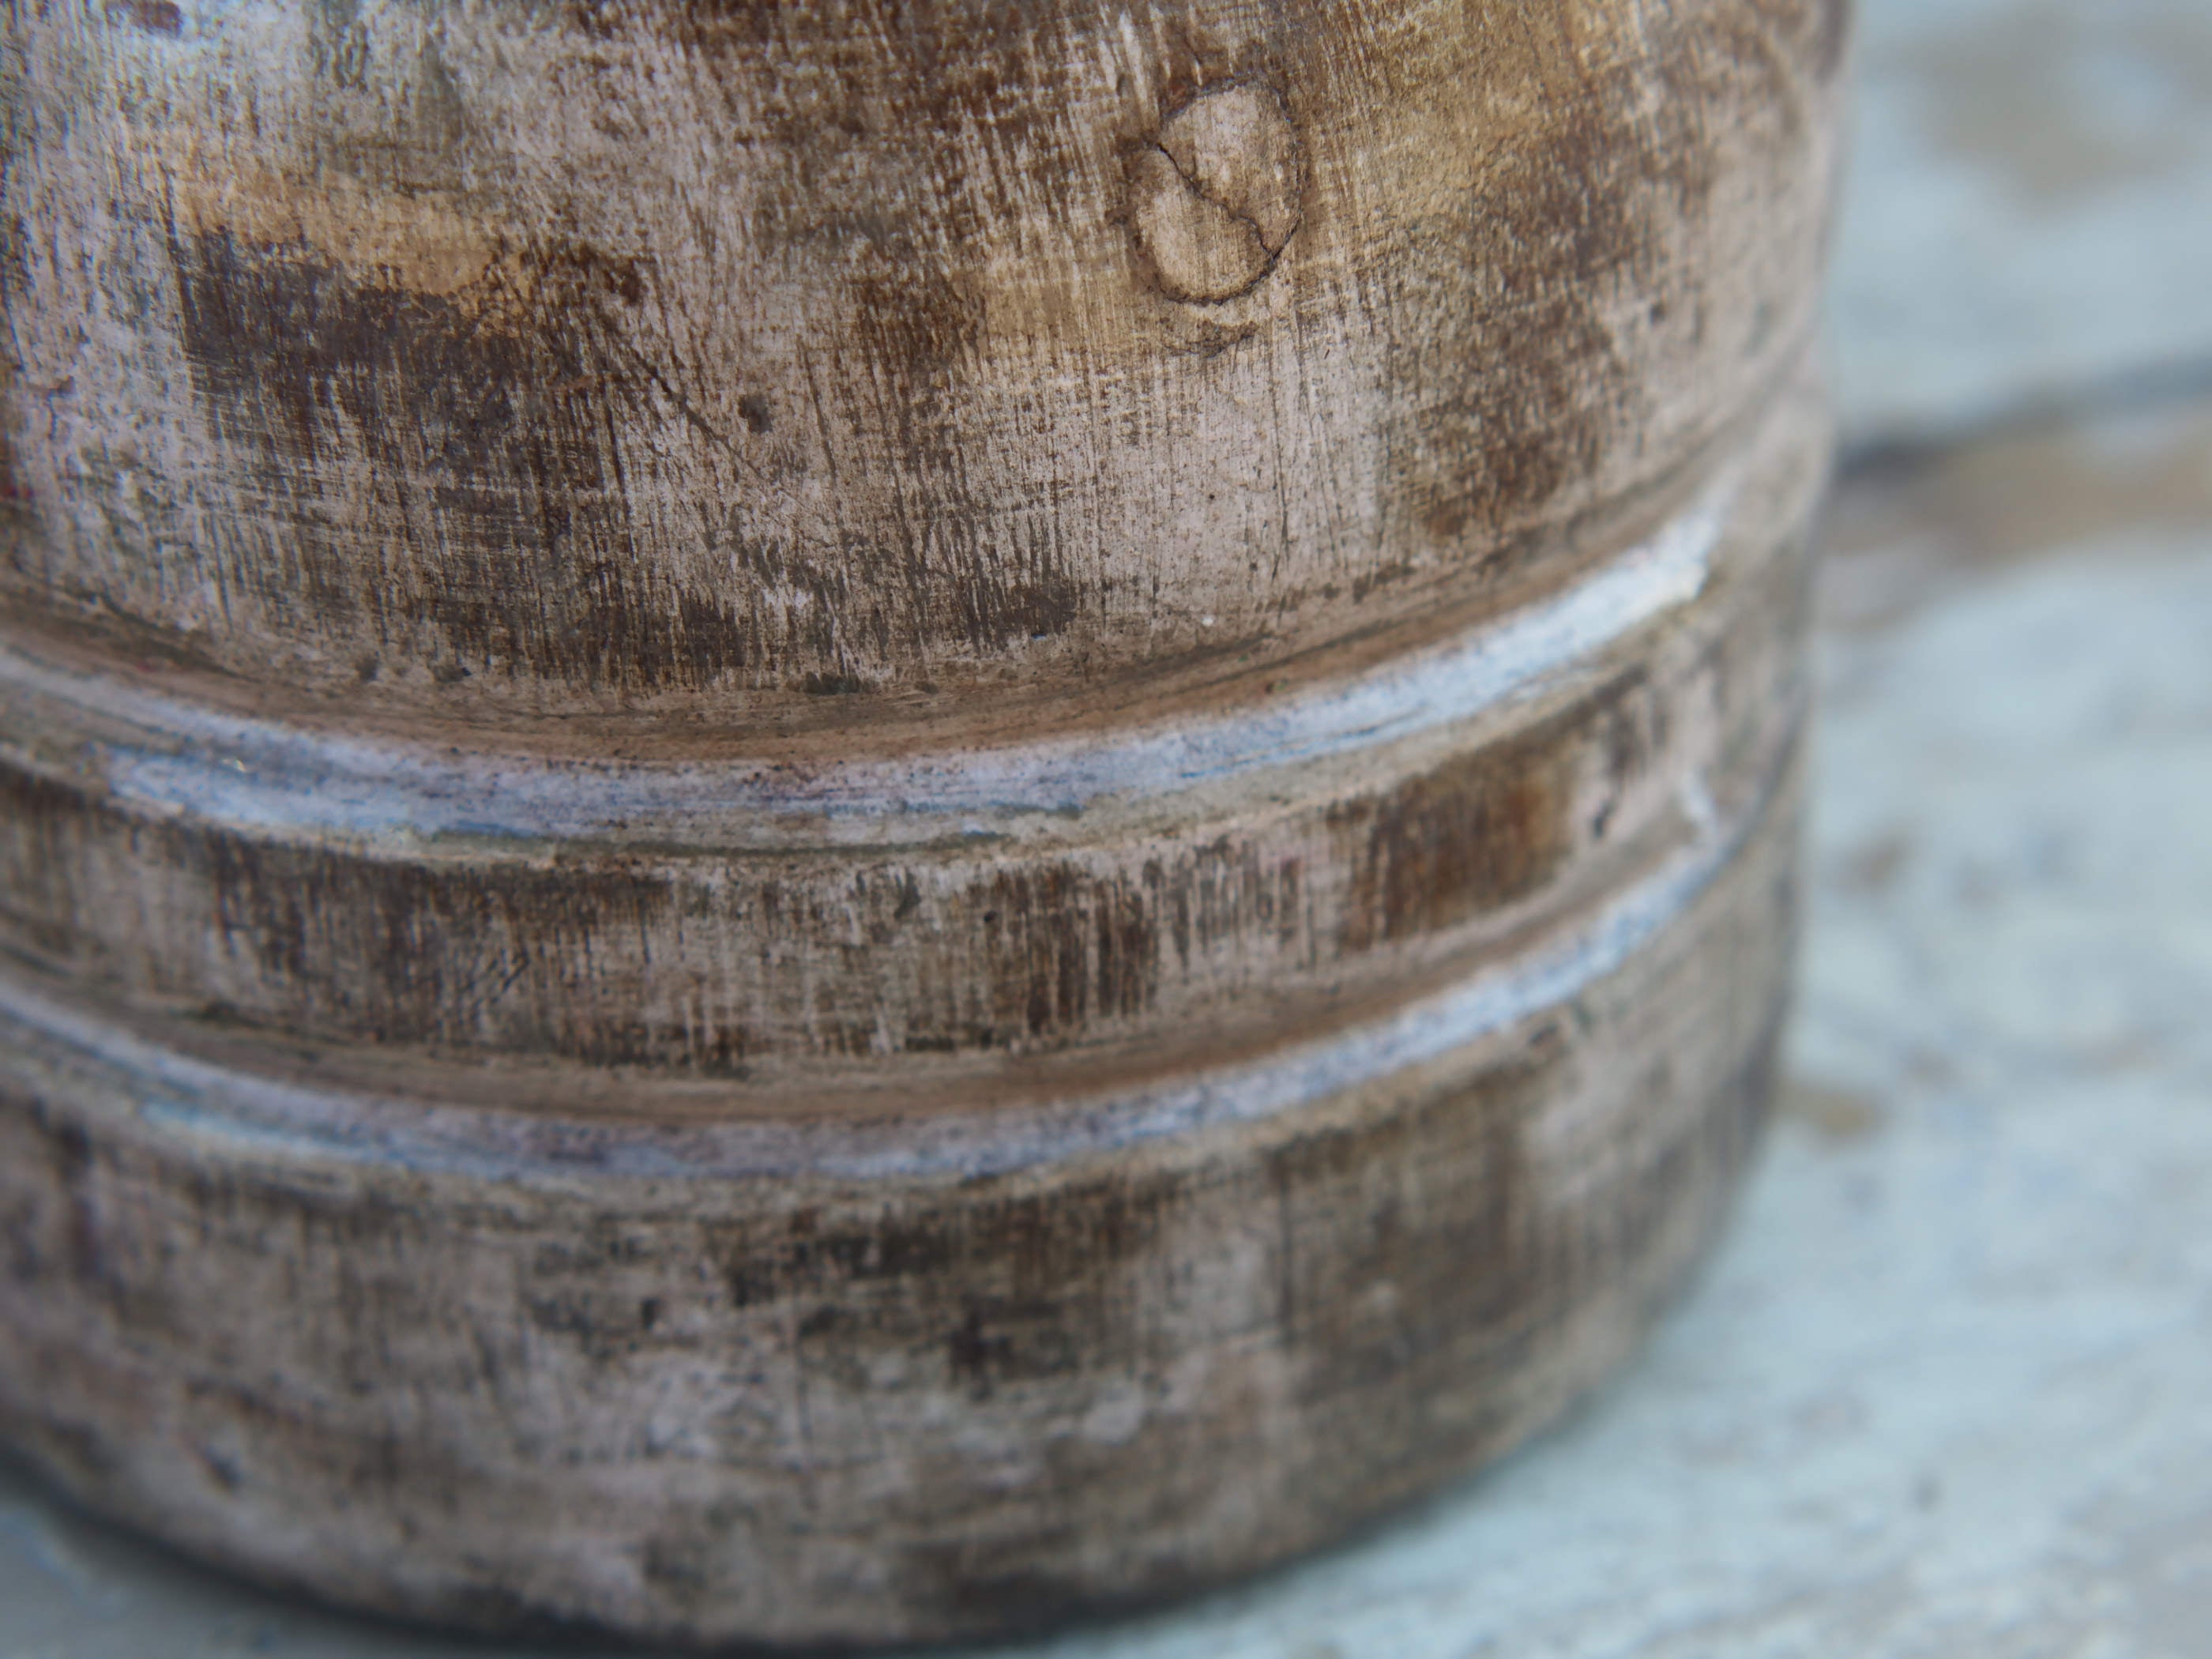 Vaso Indiano in legno dipinto, pezzo unico ricavato da un unico tronco di legno. Dimensioni diam 12 h 20 cm.  disponibili altri pezzi e colori come da foto.